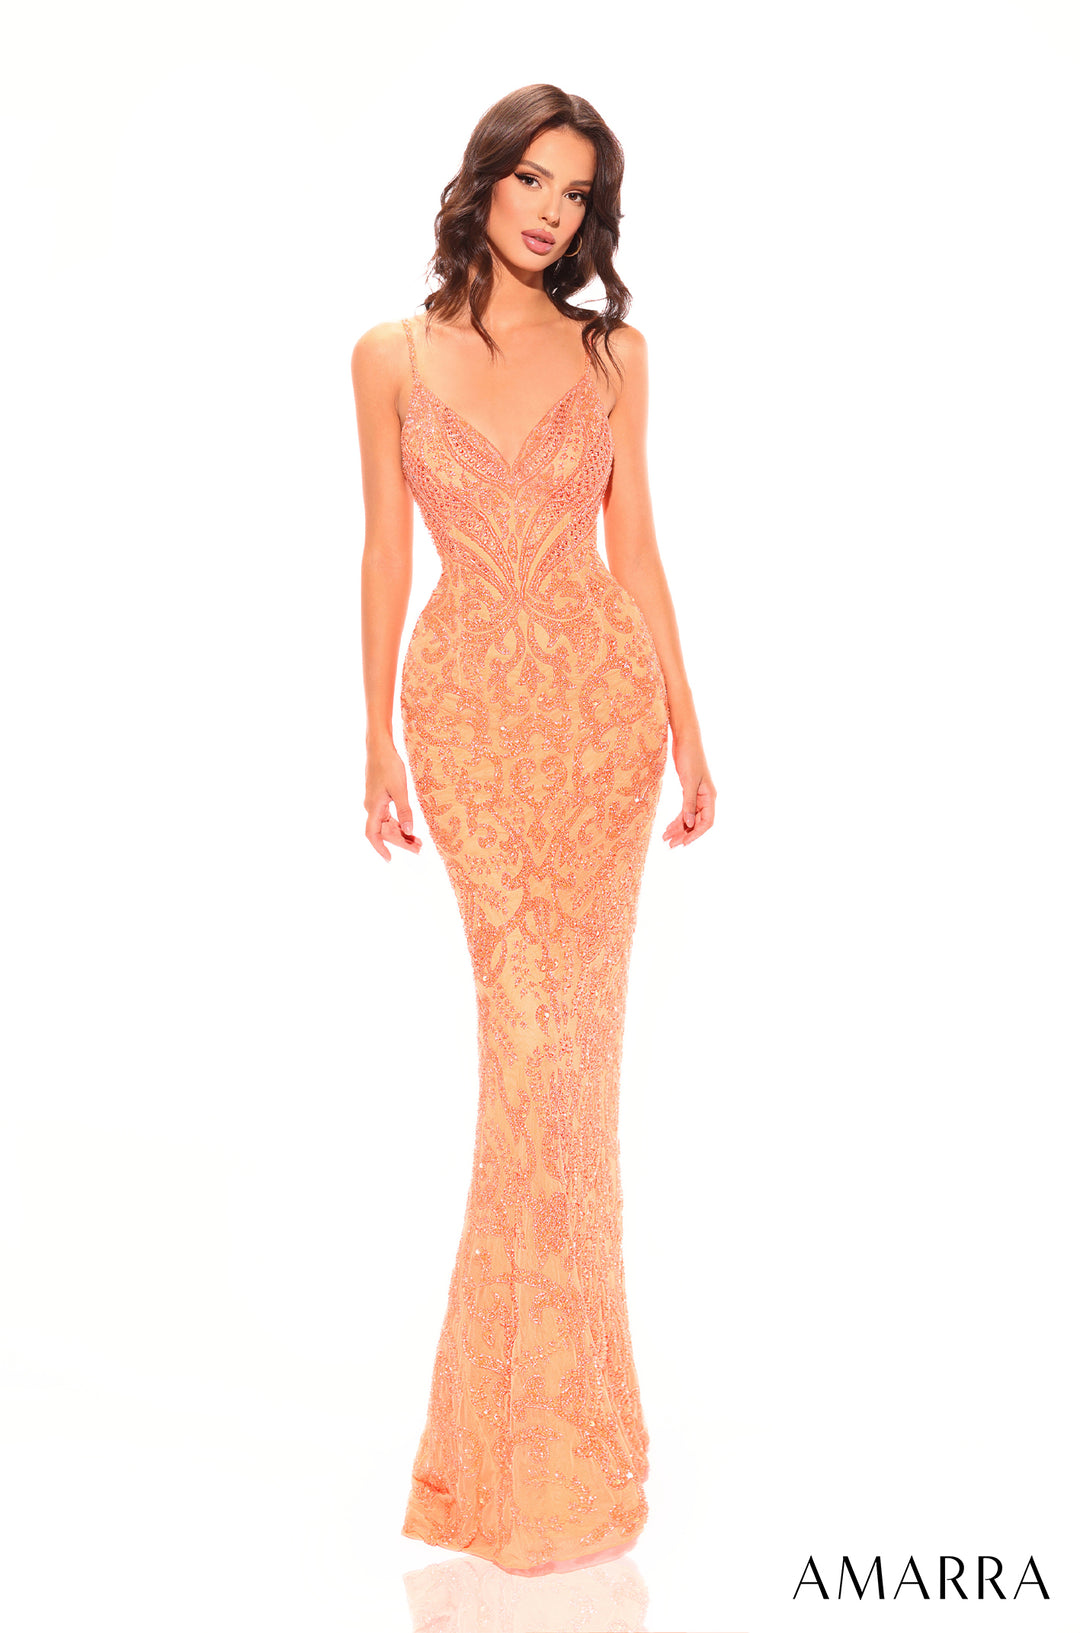 Embellished Sleeveless Mermaid Dress by Amarra 94011